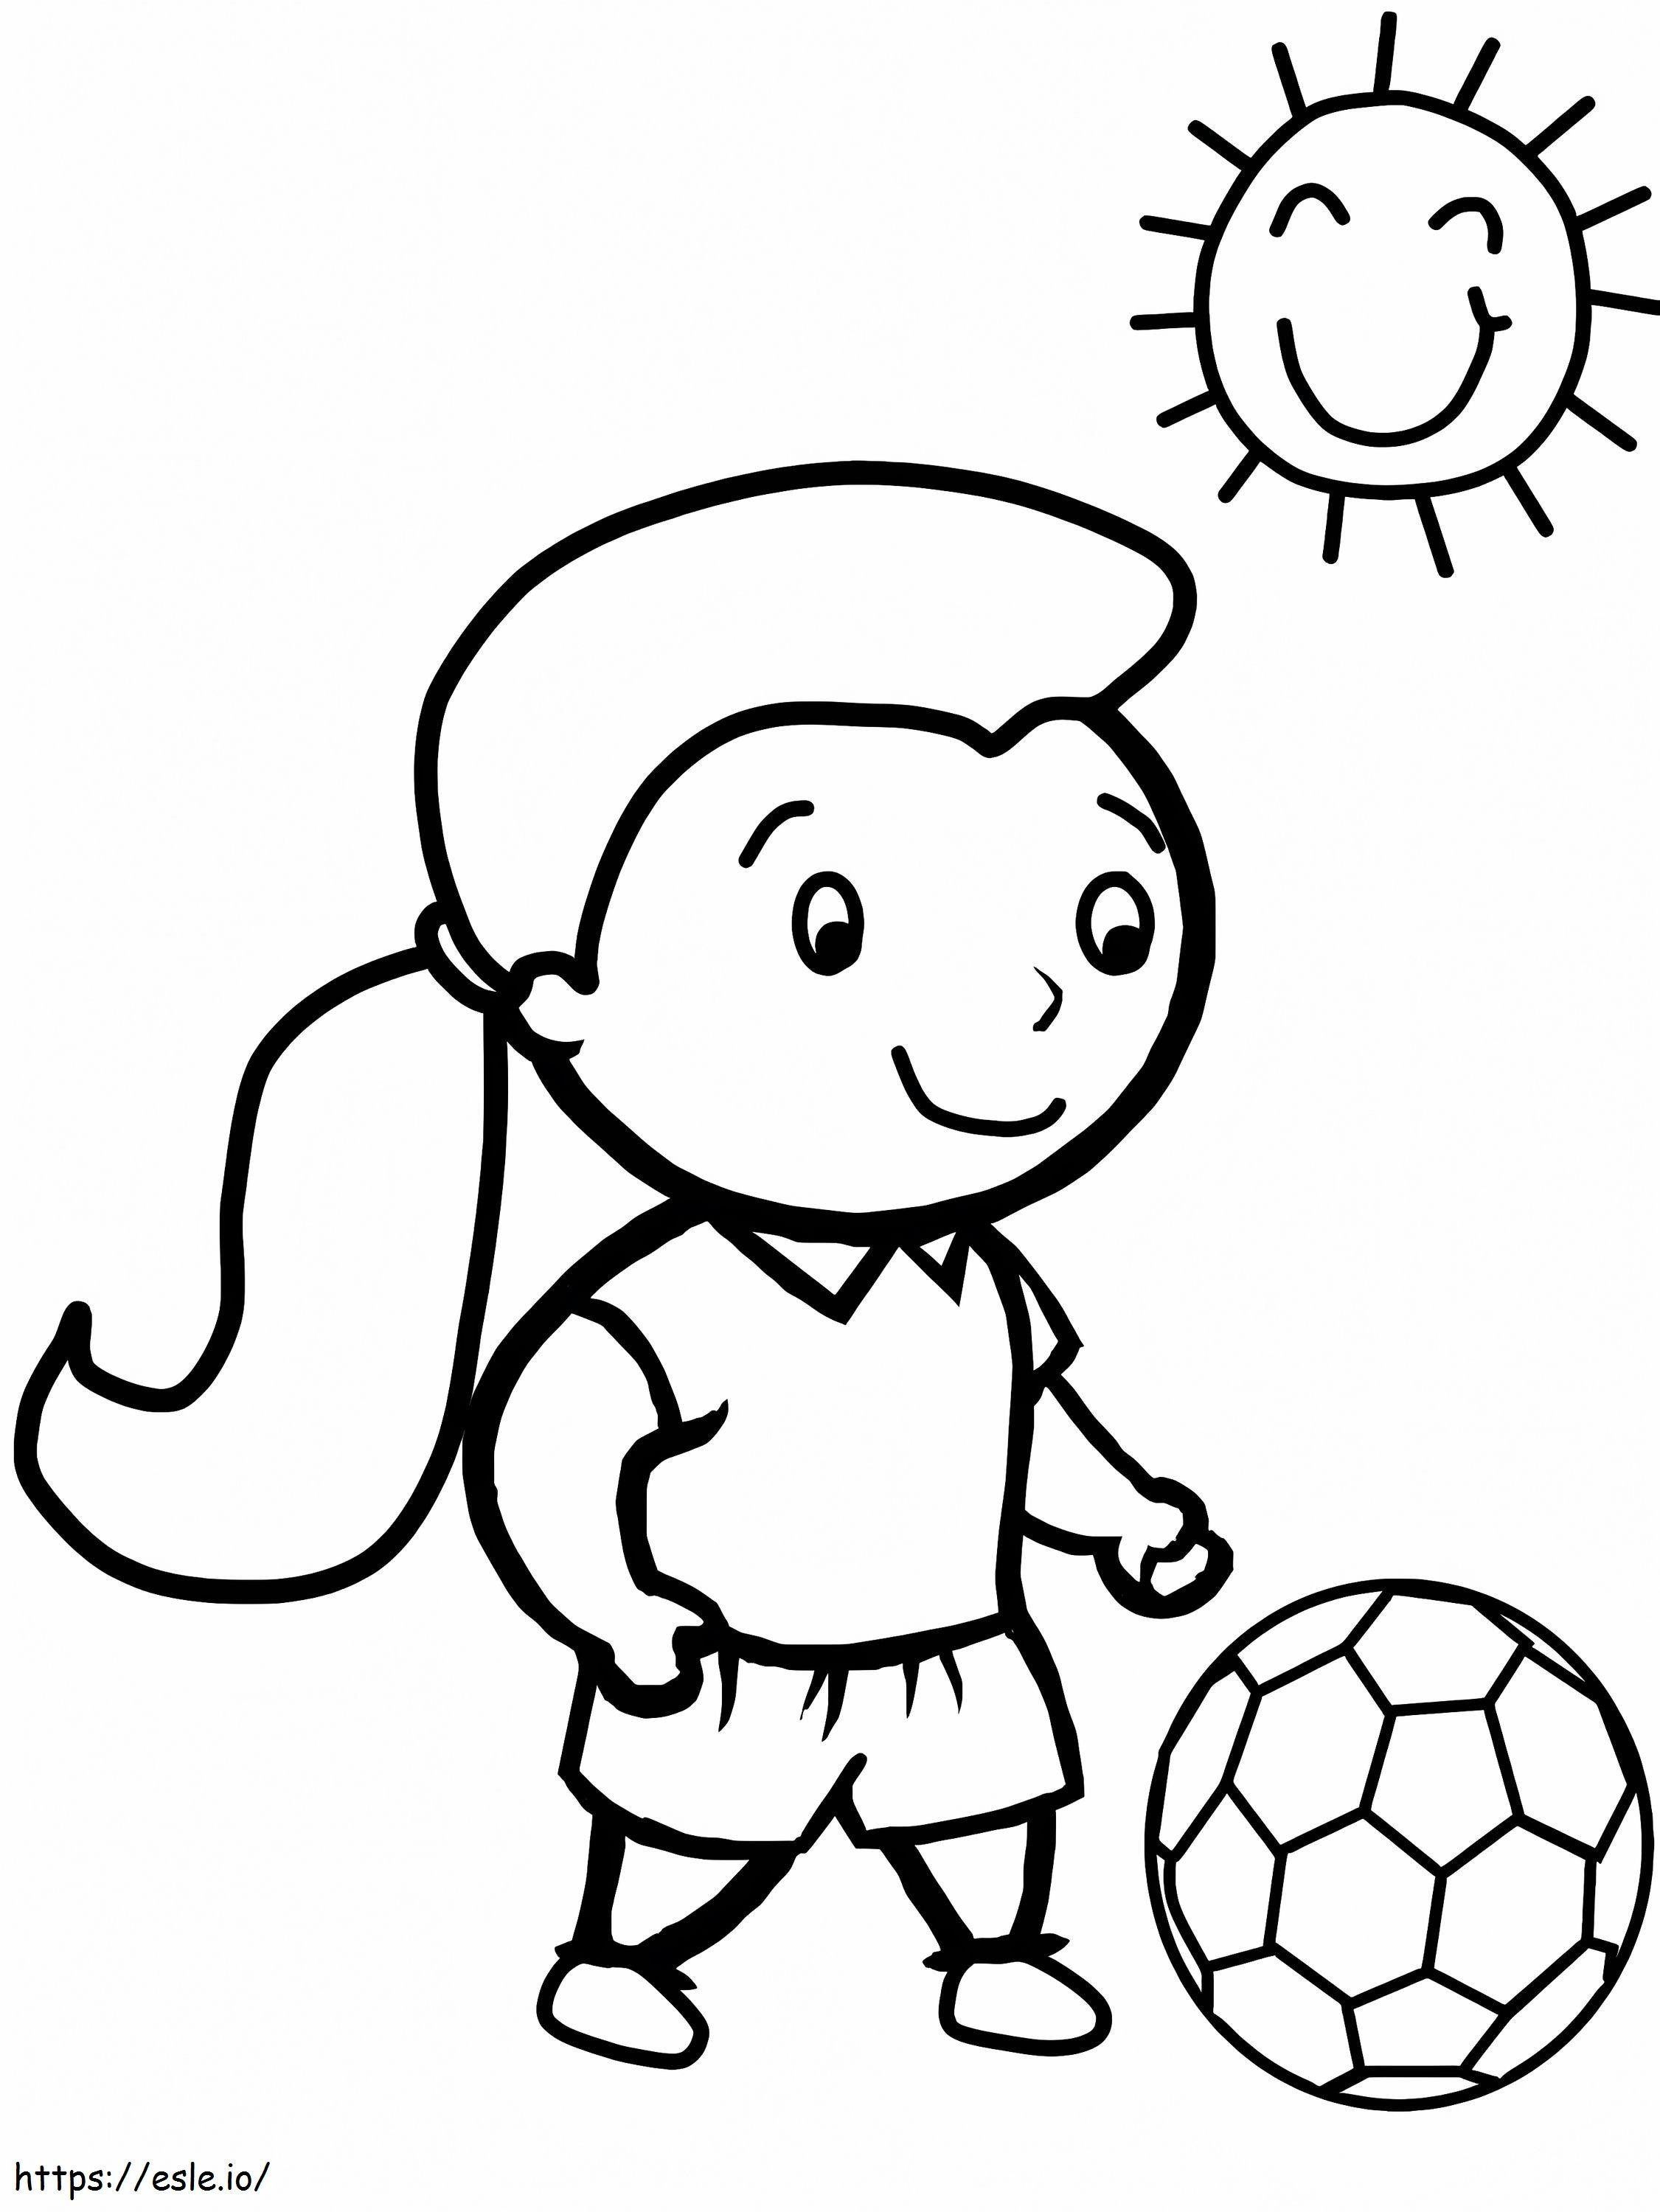 Desenho de Menina a jogar futebol para Colorir - Colorir.com